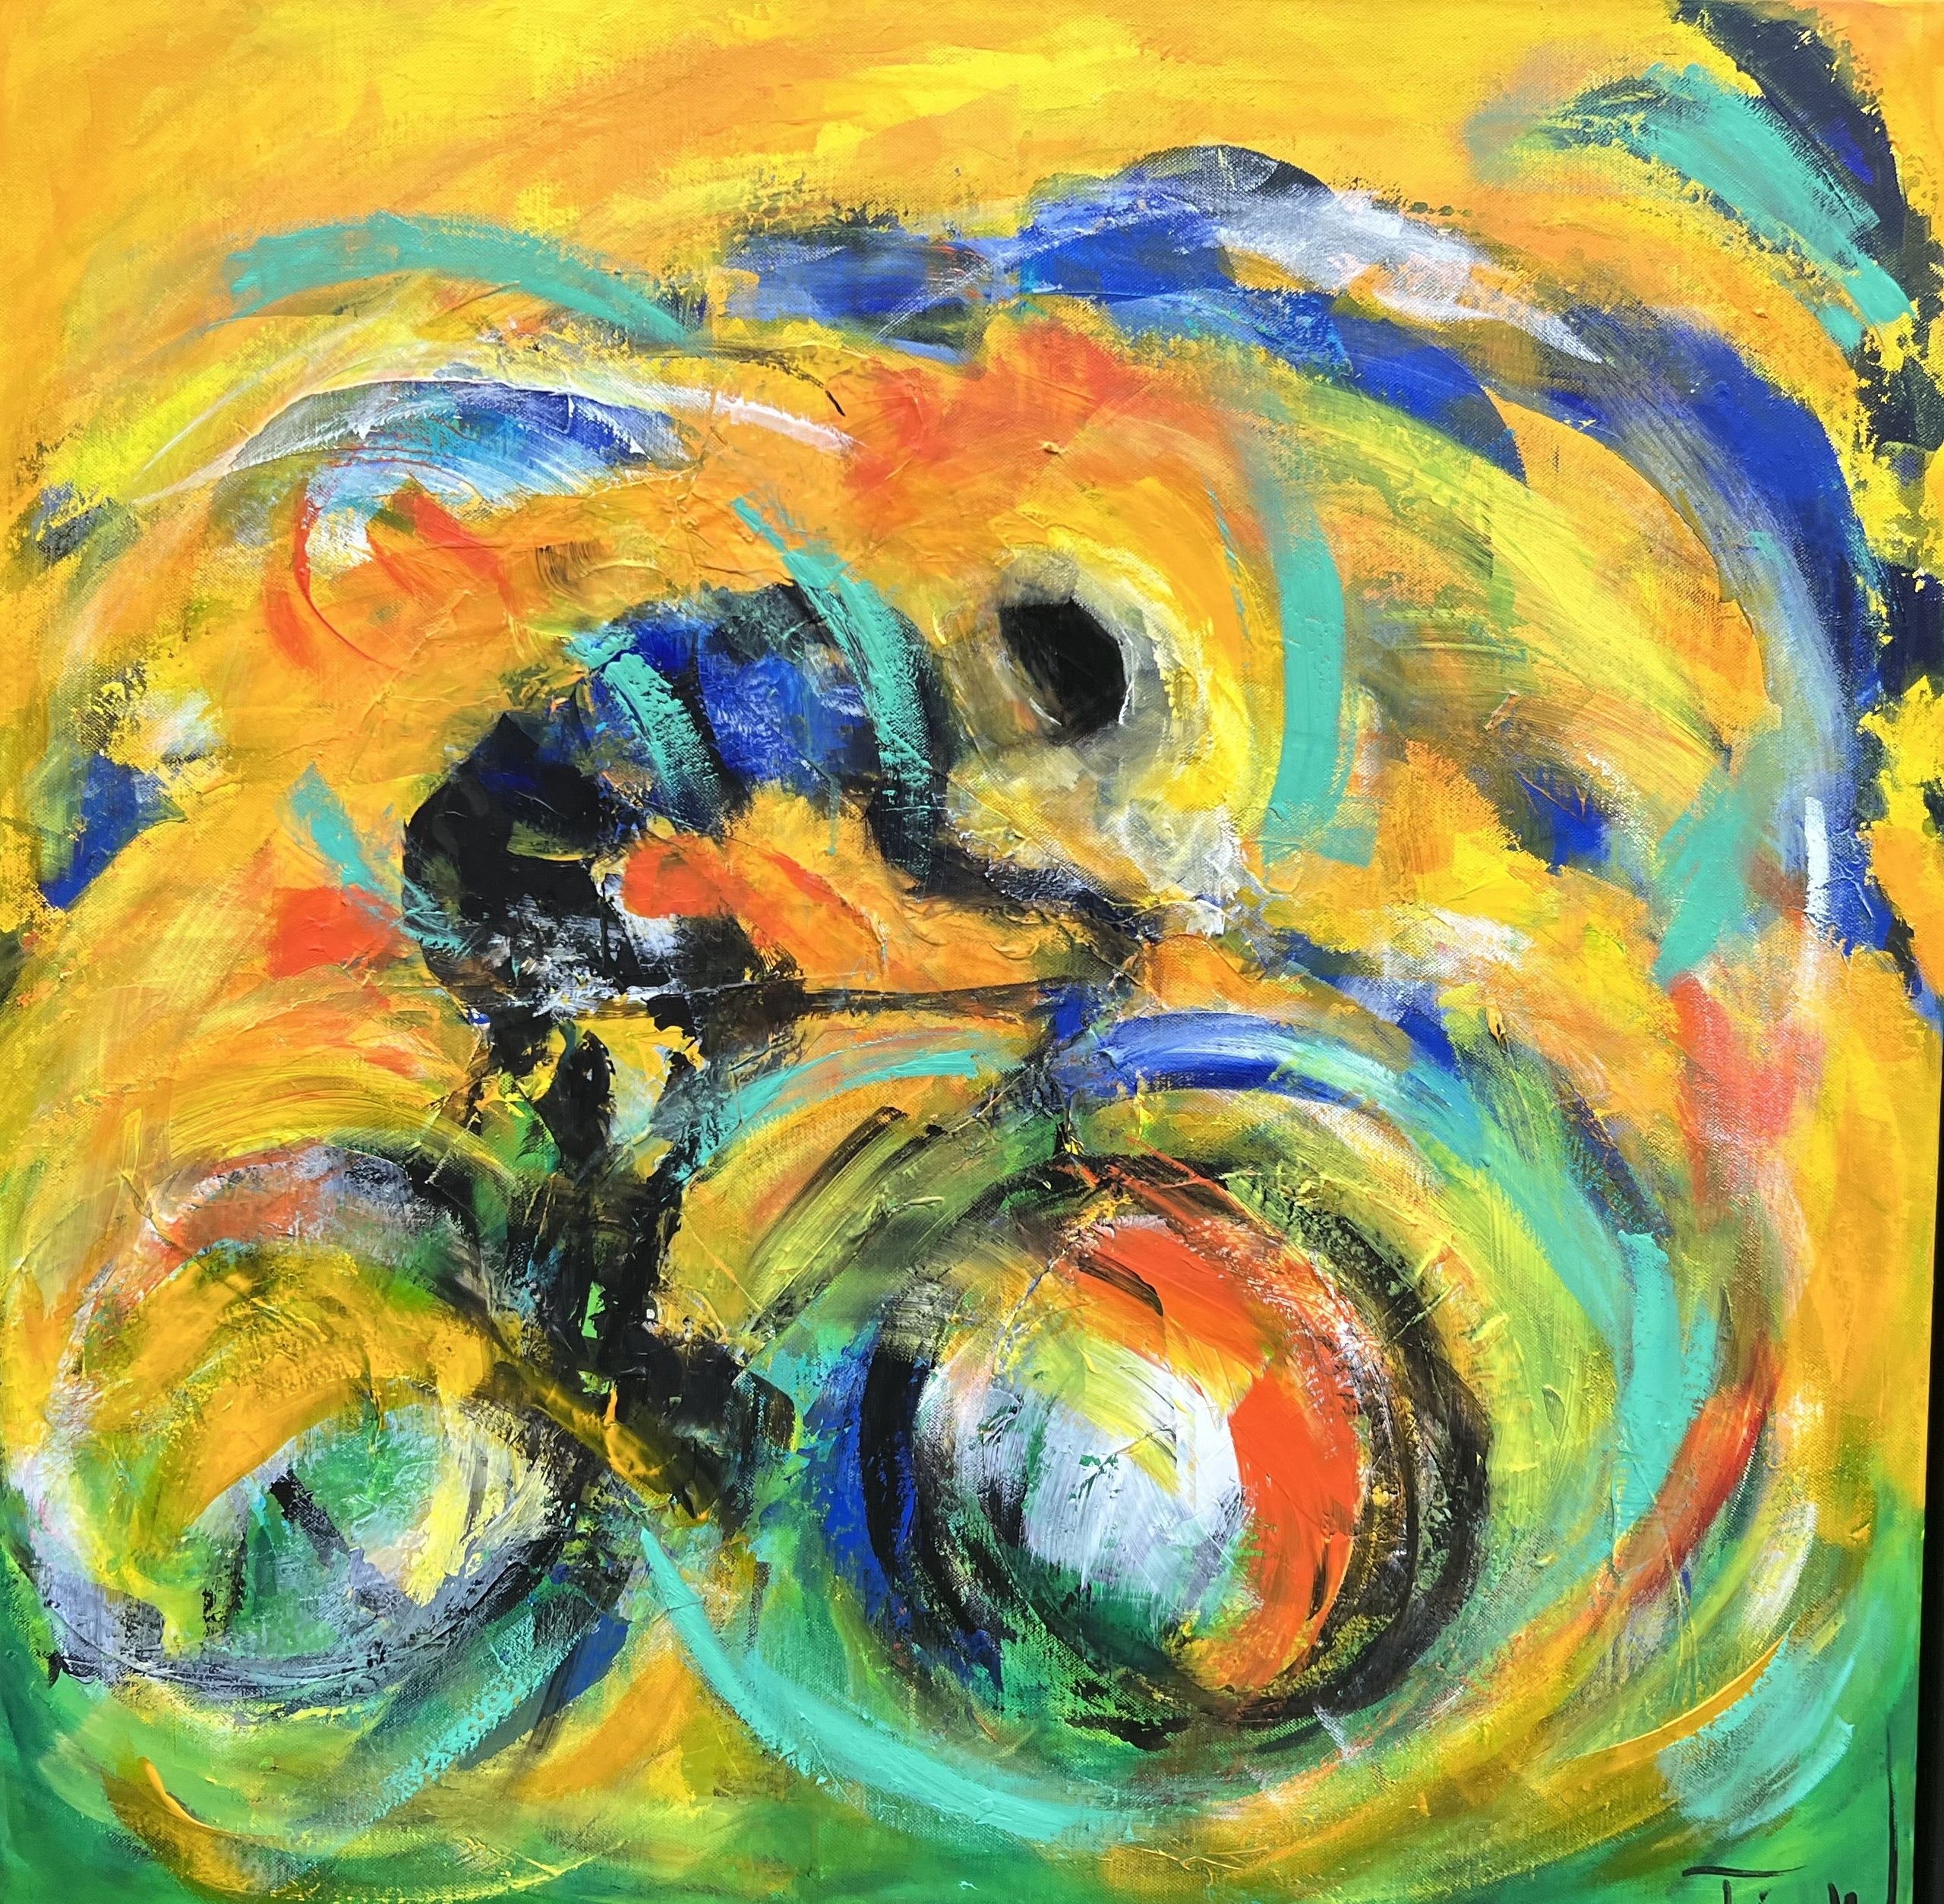 Det blæser ofte i Danmark. Her et farverigt maleri af en cyklist på racercykel, der cykler i modvind. 